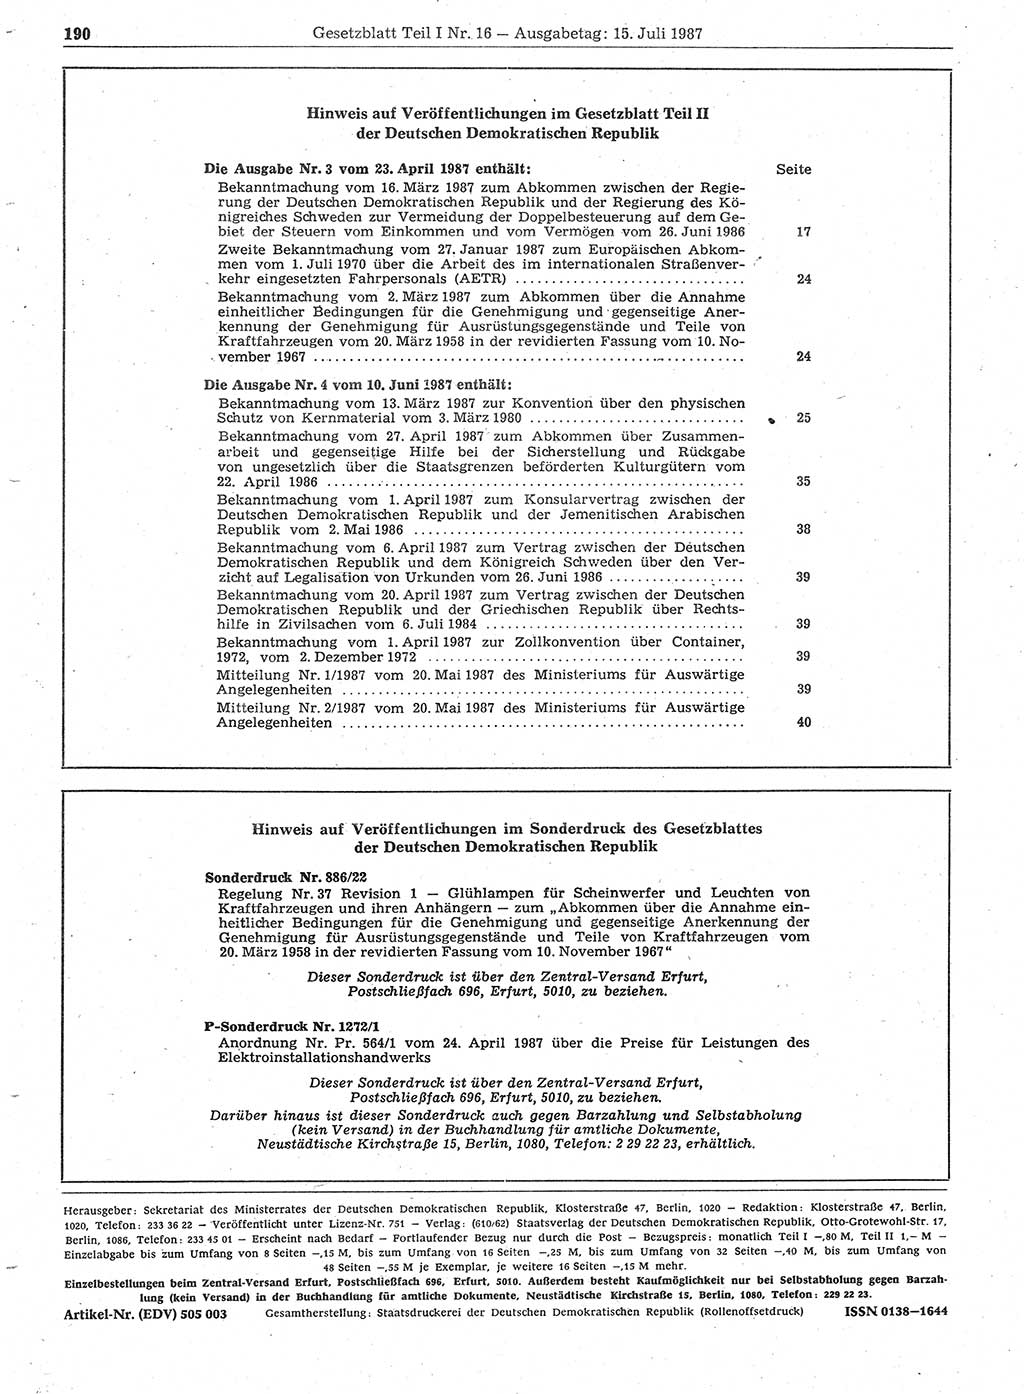 Gesetzblatt (GBl.) der Deutschen Demokratischen Republik (DDR) Teil Ⅰ 1987, Seite 190 (GBl. DDR Ⅰ 1987, S. 190)